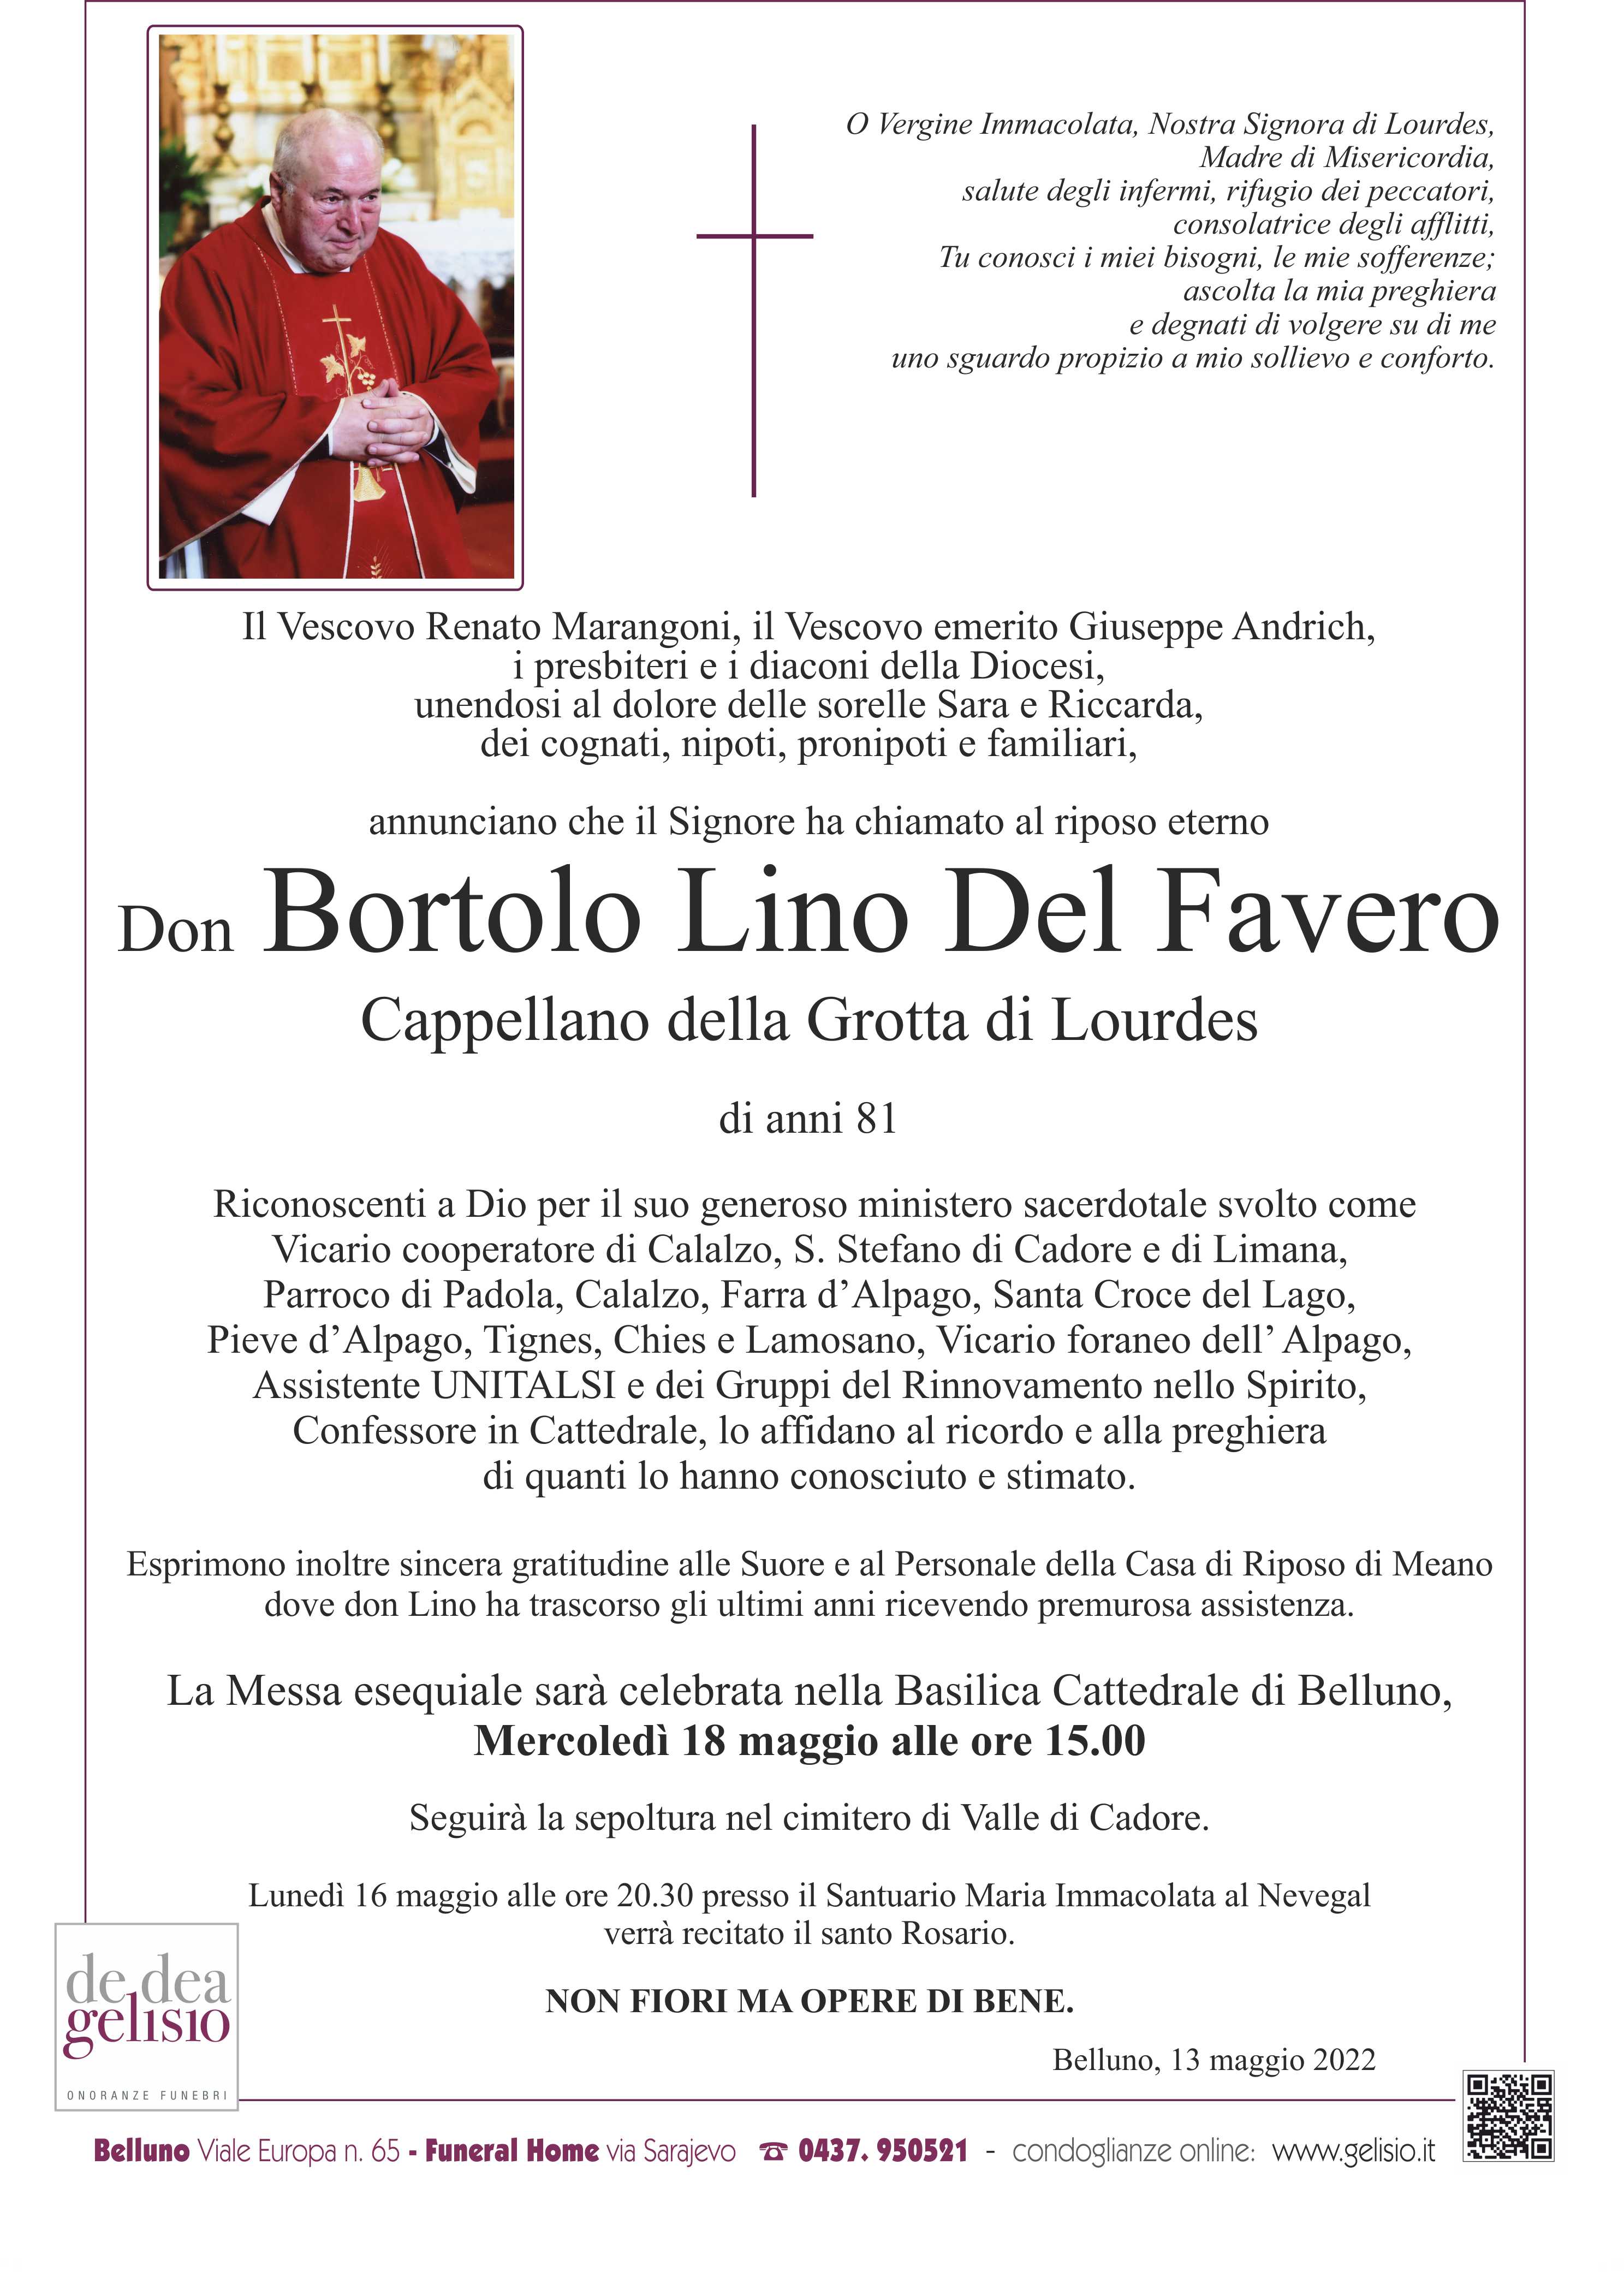 Don Bortolo Lino Del Favero